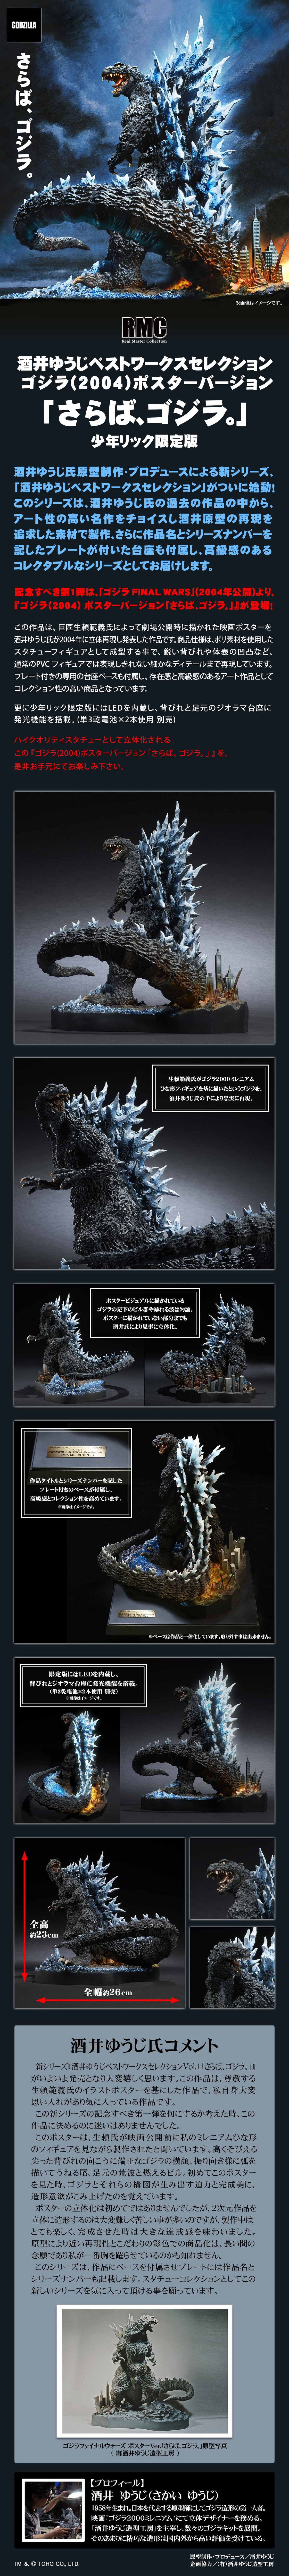 Godzilla 2004 promotional picture